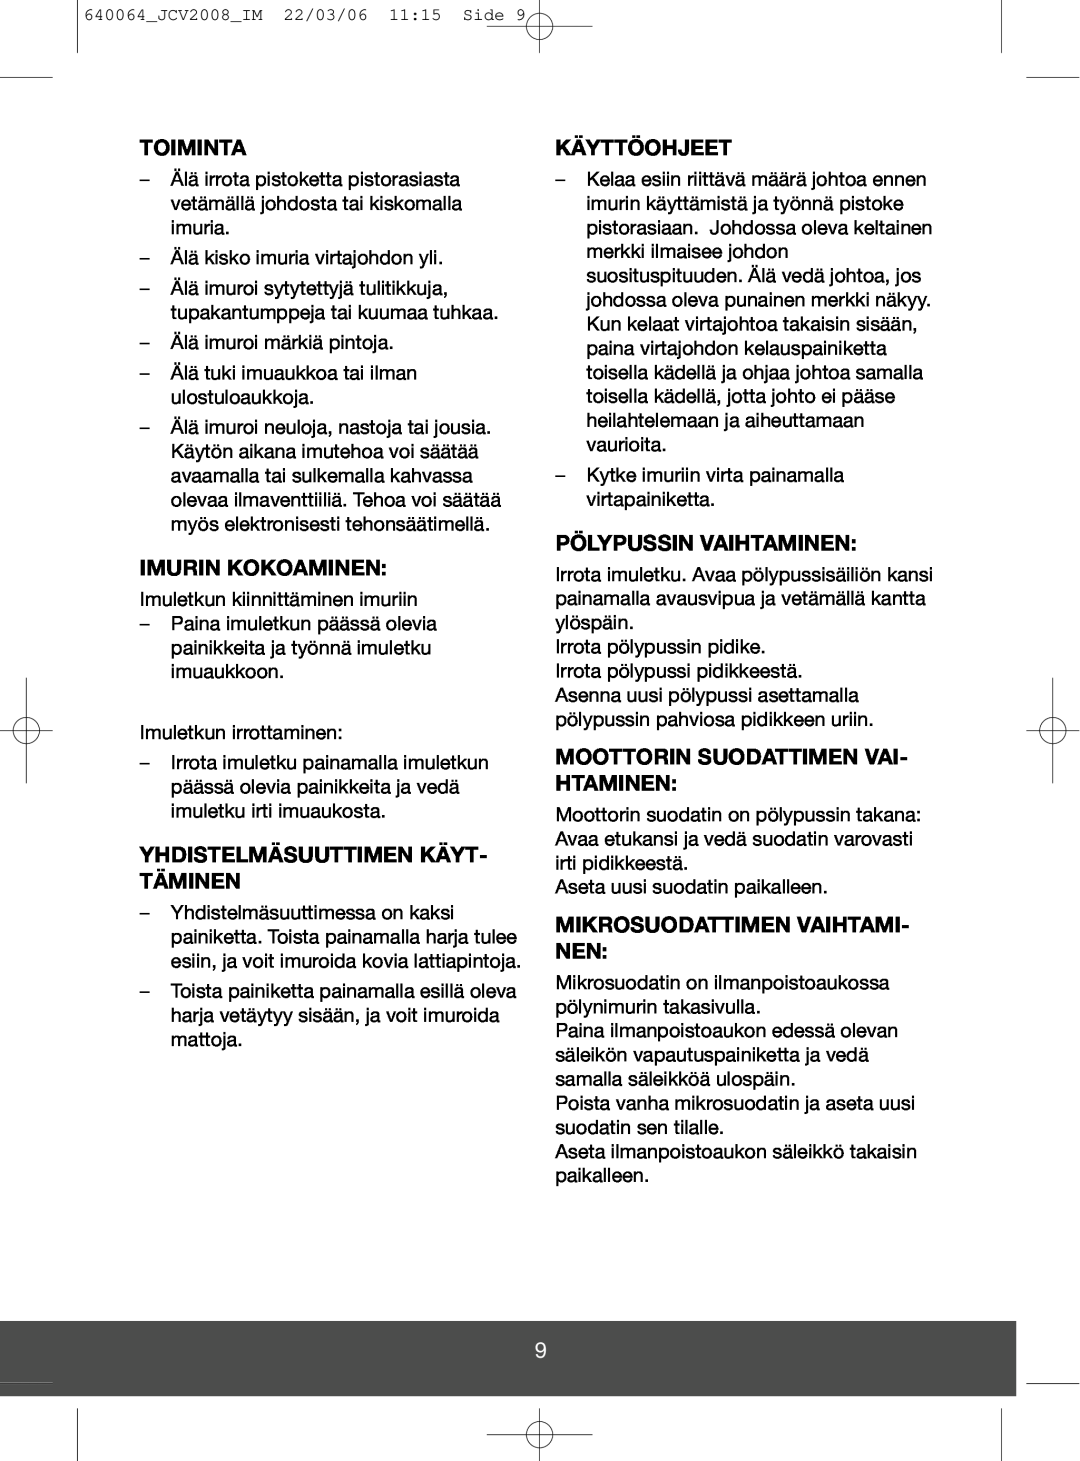 Melissa 640-123 manual Toiminta, Imurin Kokoaminen, Yhdistelmäsuuttimen Käyt- Täminen, Käyttöohjeet, Pölypussin Vaihtaminen 